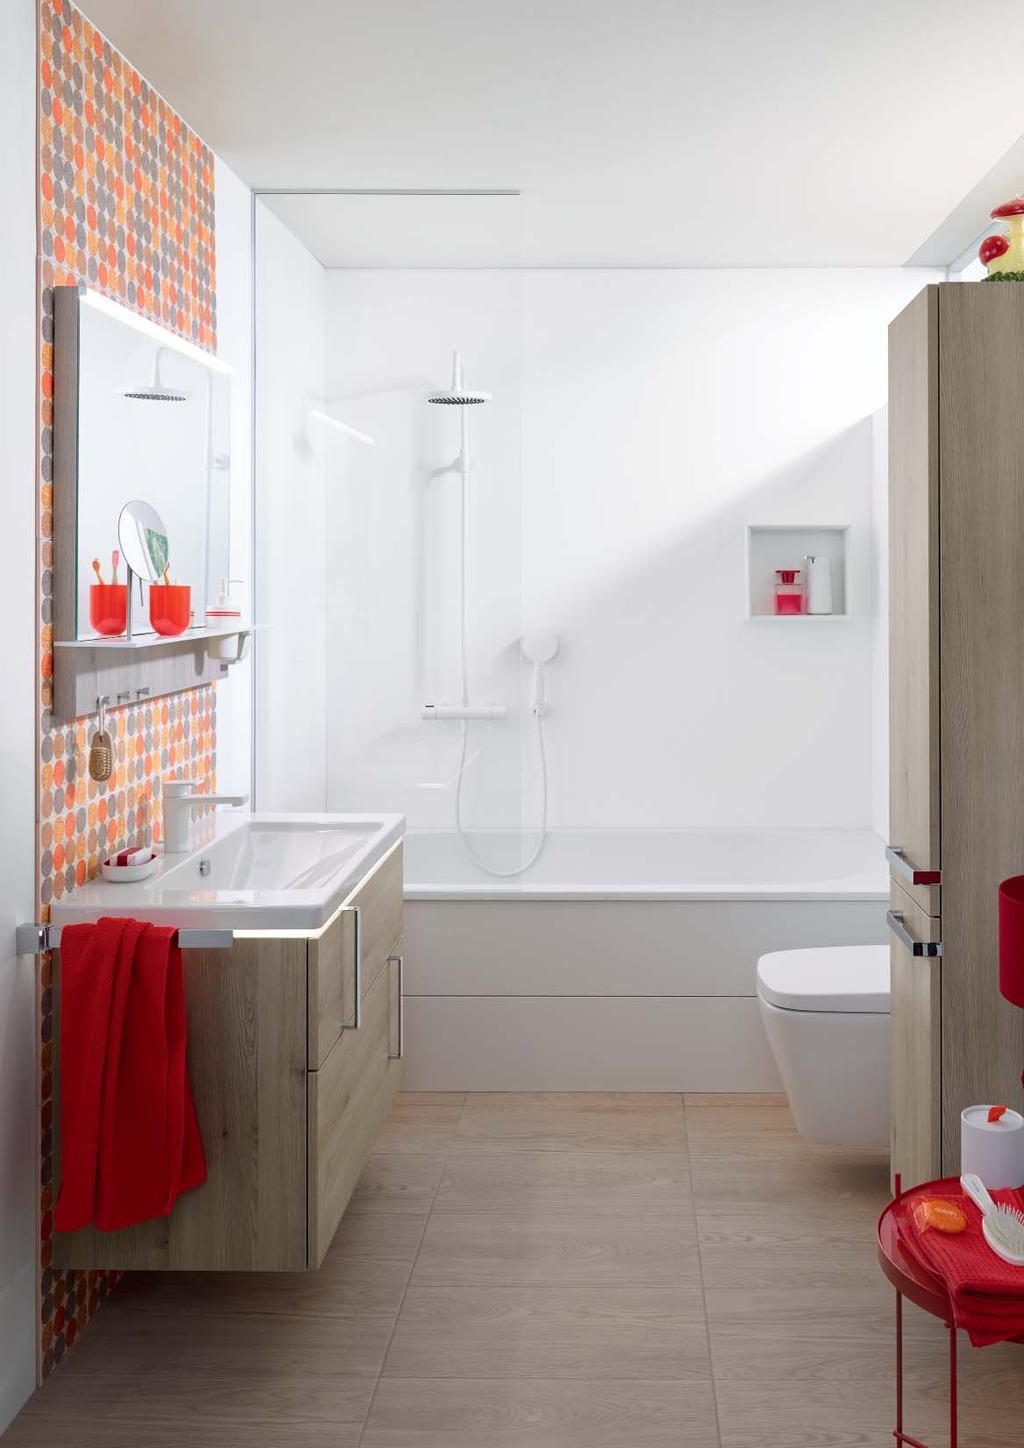 2. Eqio CE QUE VOUS VOULEZ WAT U WIL Polyvalent comme un caméléon : S'adapte parfaitement aux caractéristiques de votre salle de bain.